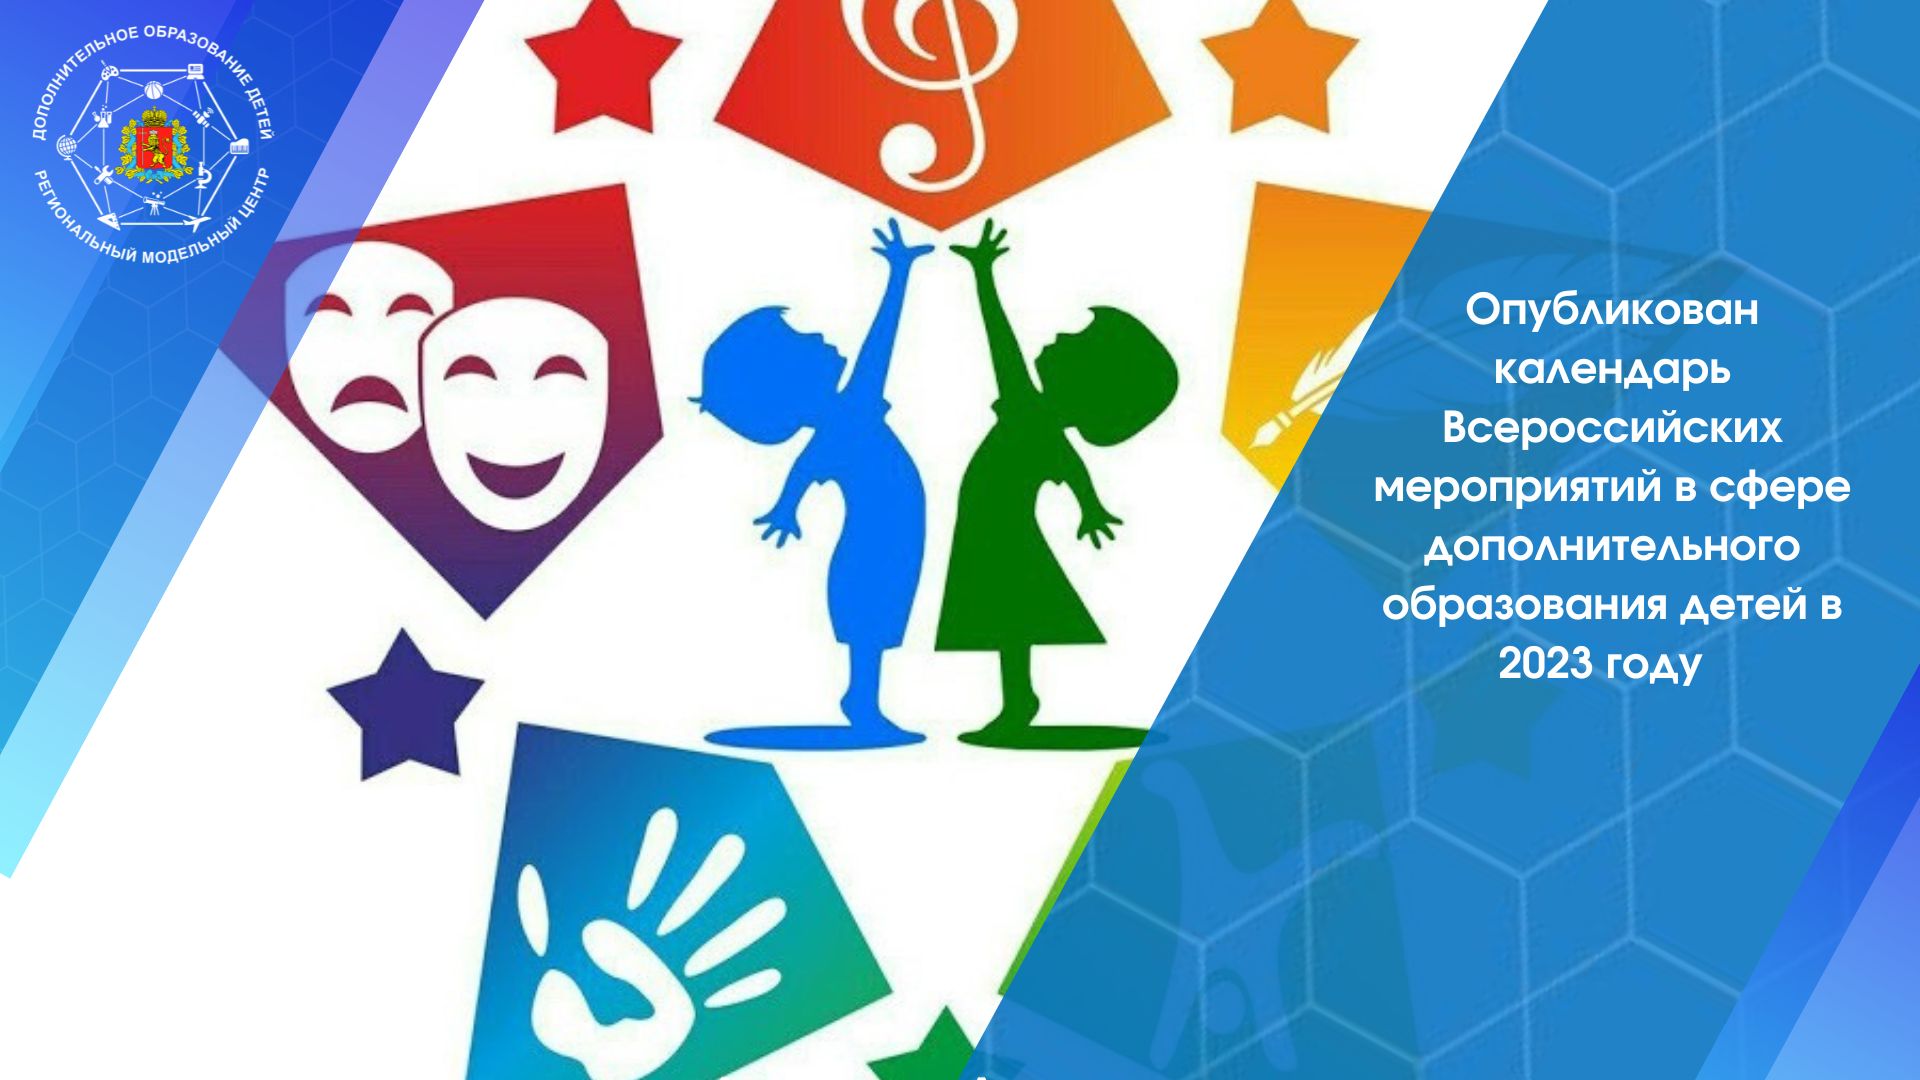 Утвержден и опубликован календарь Всероссийских мероприятий в сфере дополнительного образования детей в 2023 году.